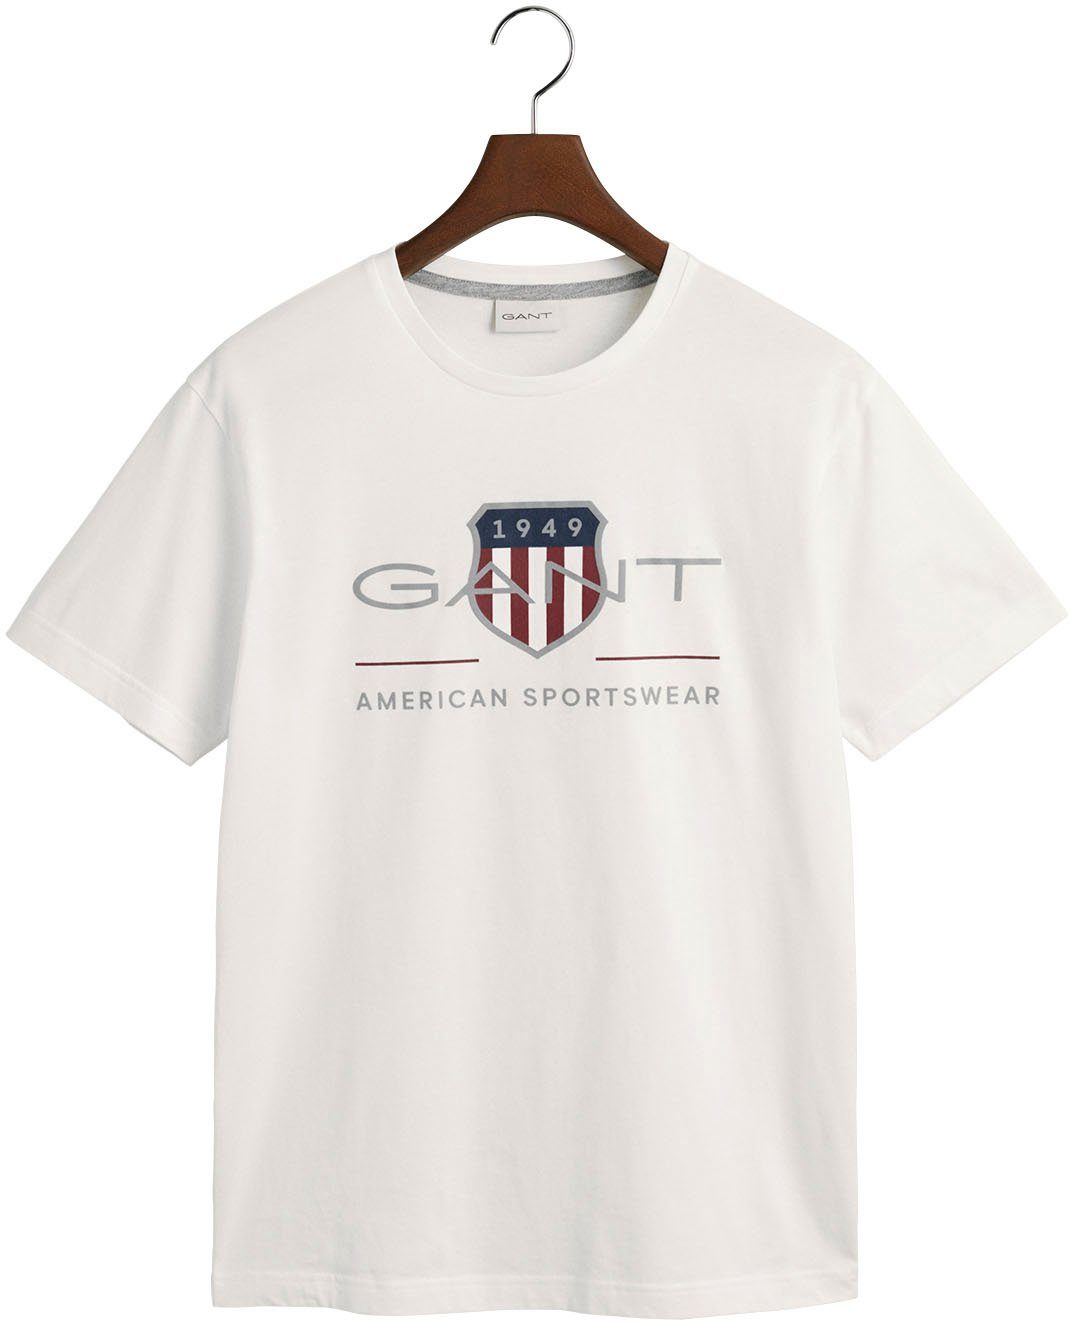 SHIELD SS der ARCHIVE mit REG auf white Brust T-SHIRT T-Shirt Gant Logodruck